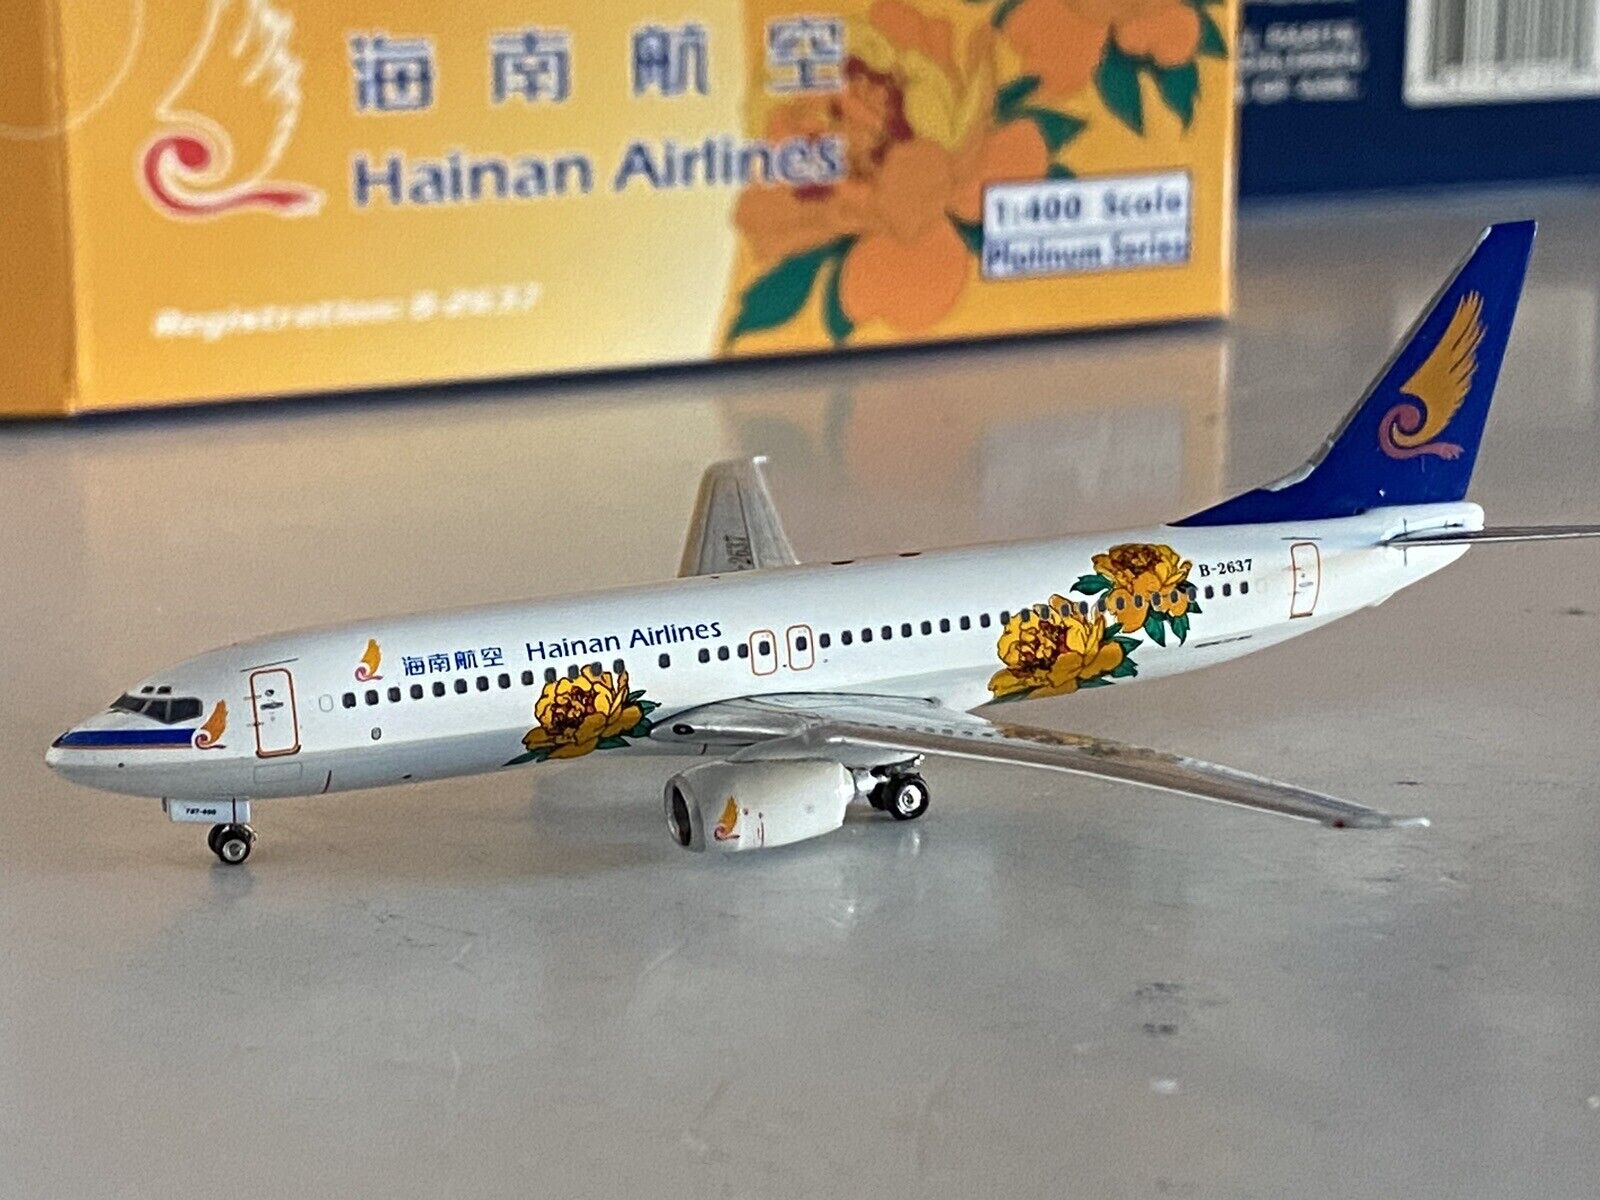 Phoenix Models Hainan Airlines Boeing 737-800 1:400 B-2637 Orange Flowers